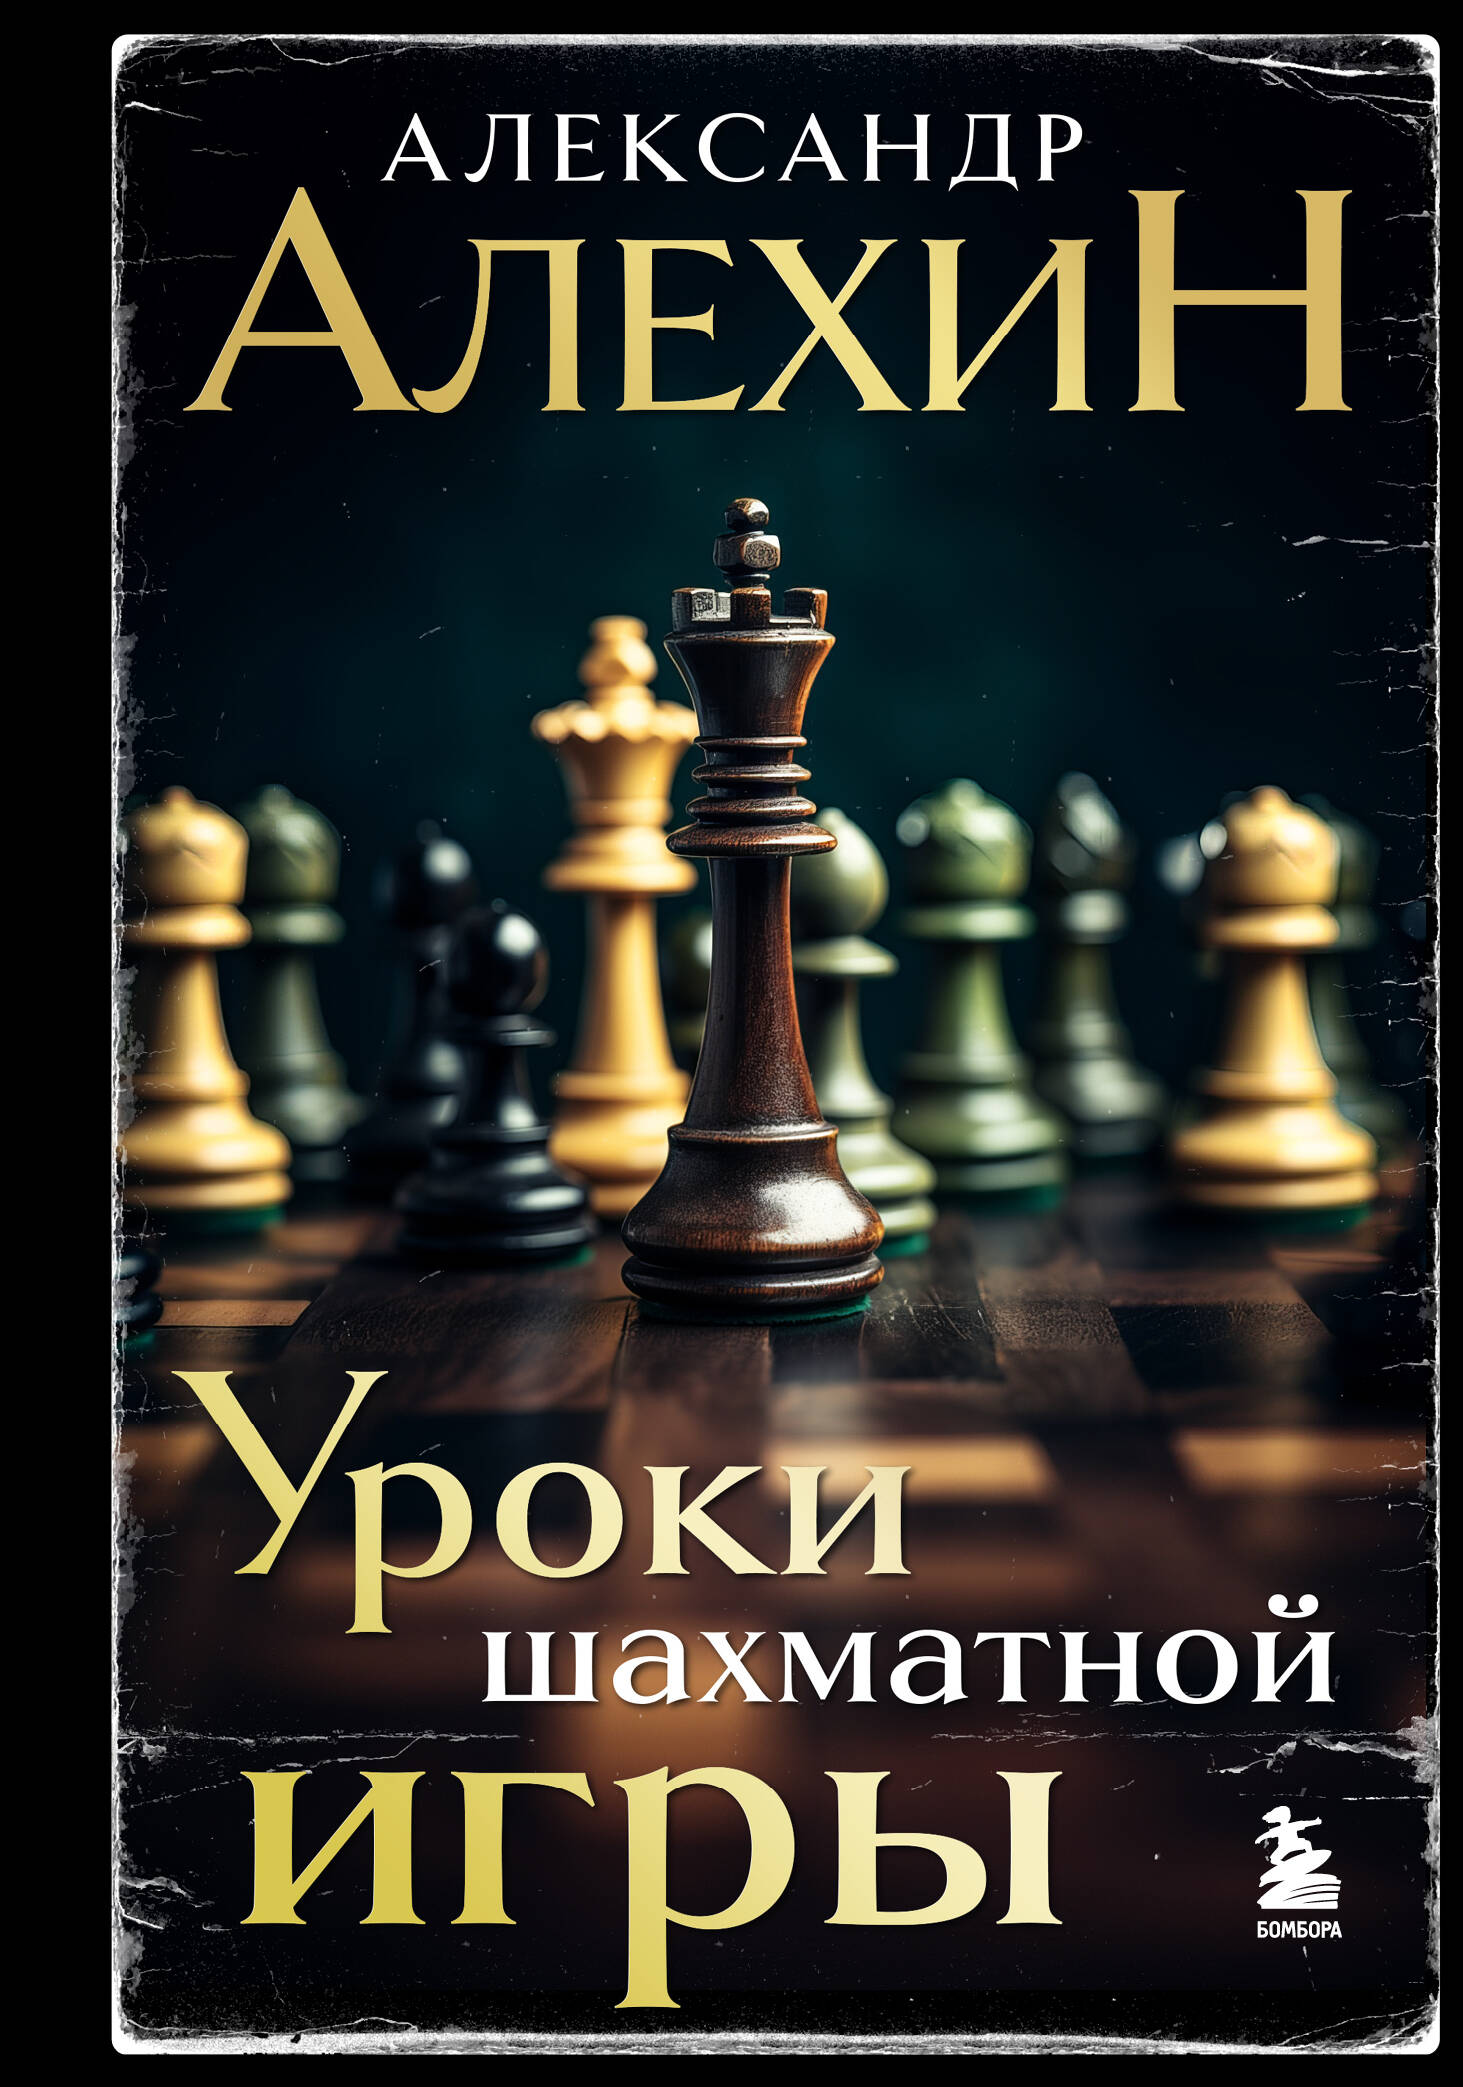  книга Александр Алехин. Уроки шахматной игры (3-е изд.) (новое оформление)